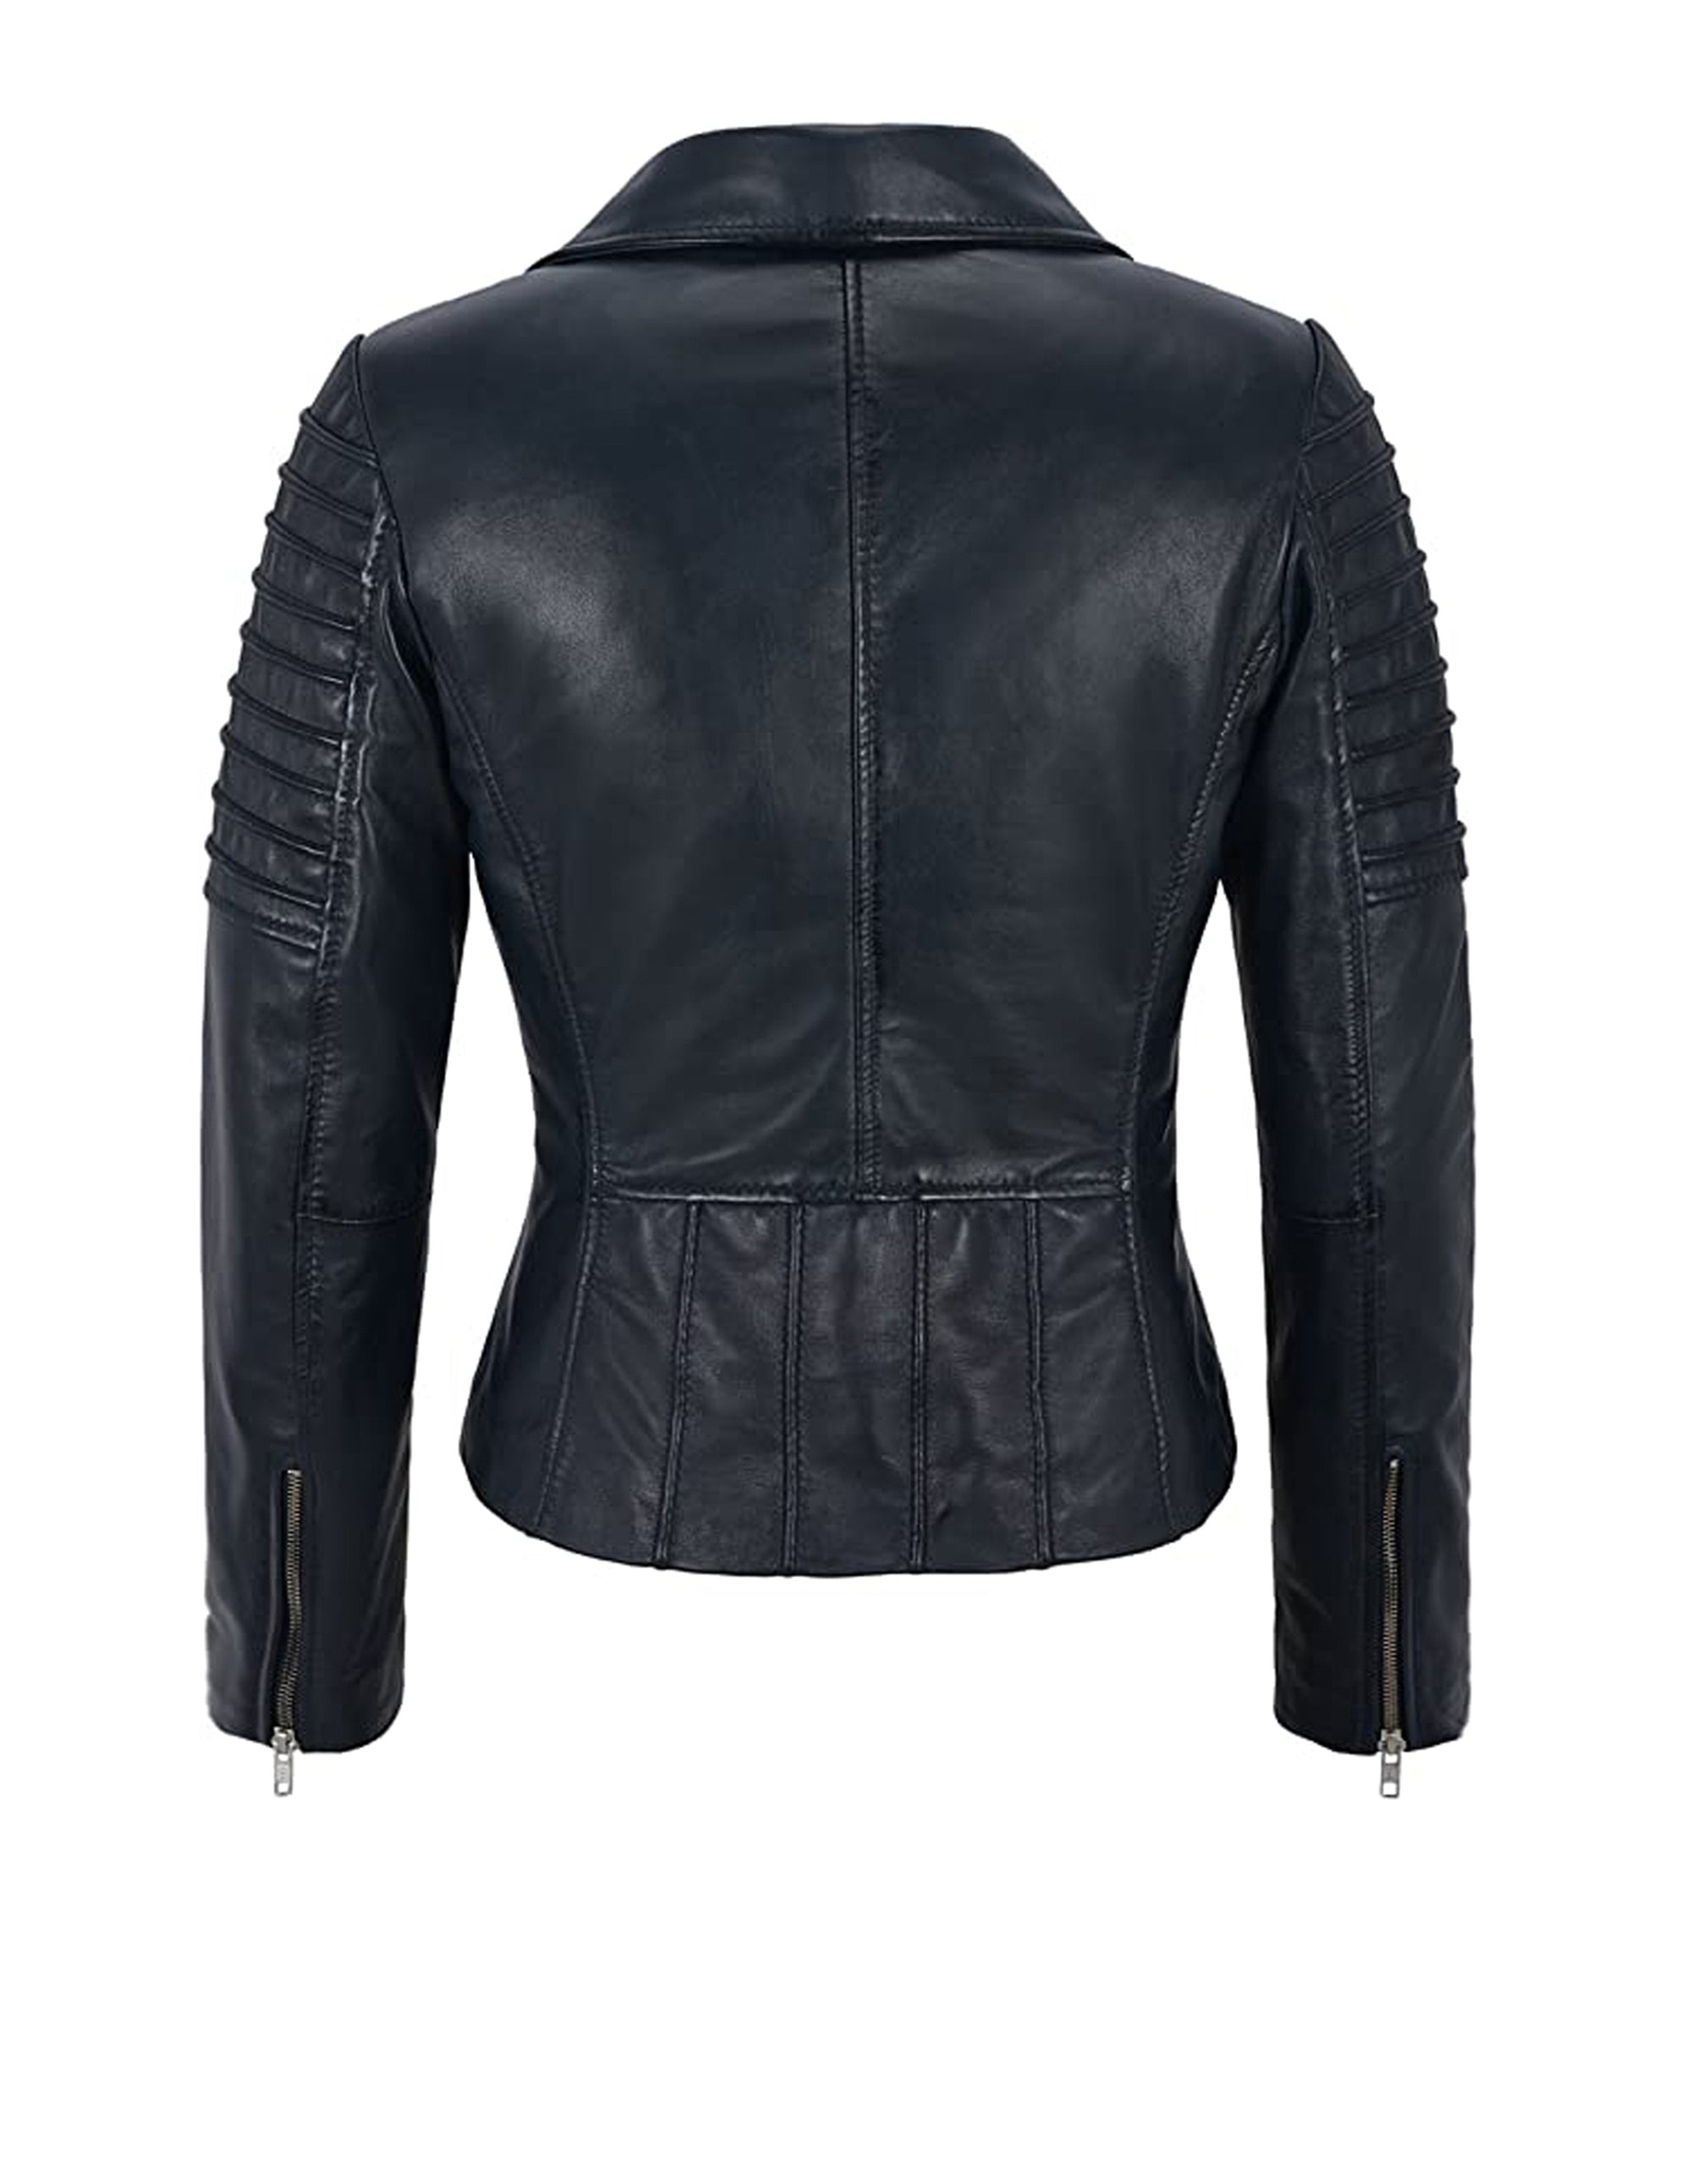 Women's Black Sheepskin Leather Jacket